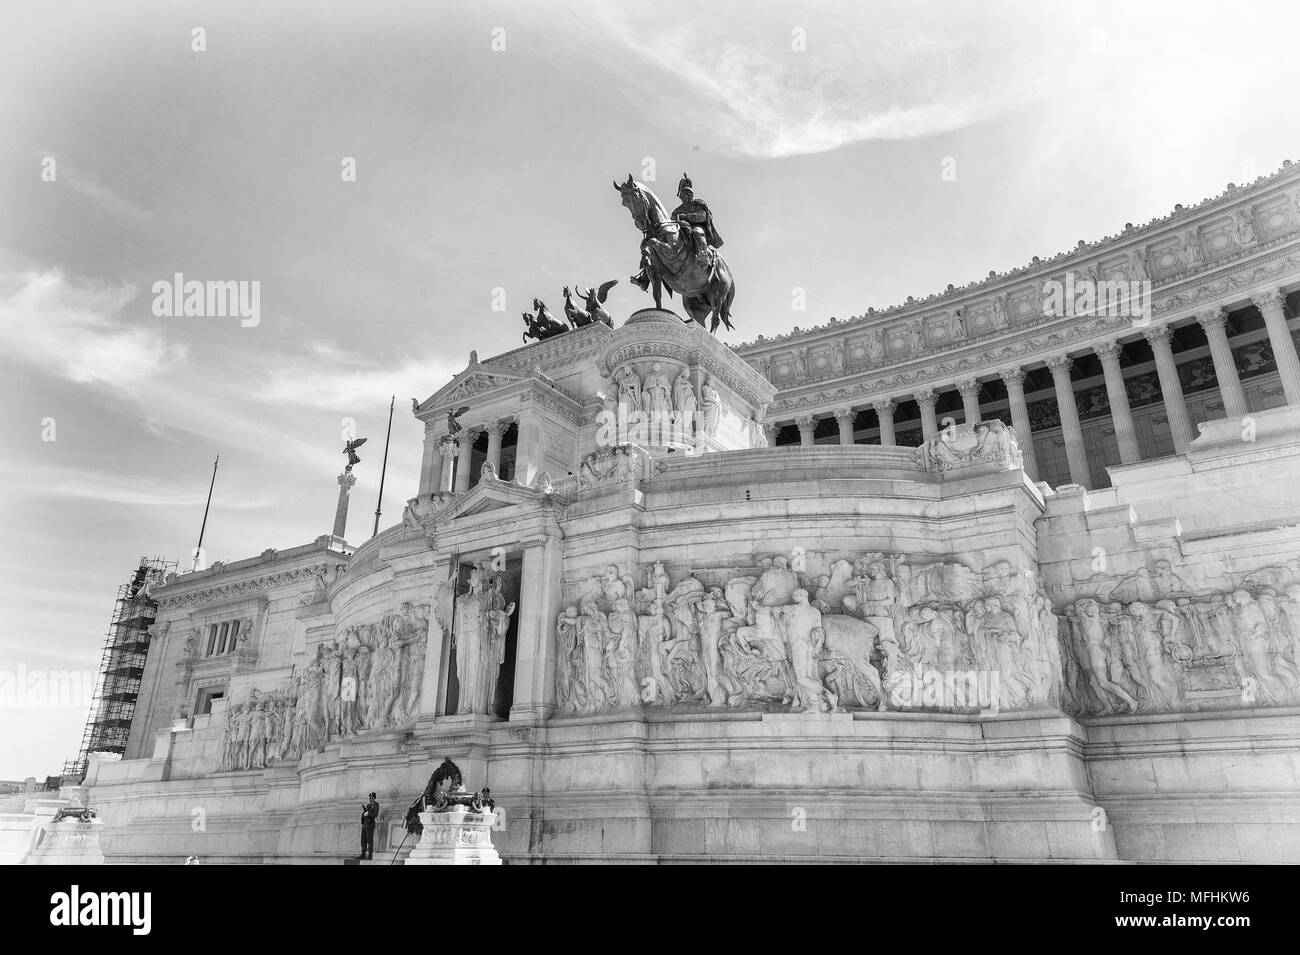 Une partie de l'autel de la patrie, construit en l'honneur de Victor Emmanuel, le premier roi d'une Italie unifiée, situé à Rome, Italie Banque D'Images